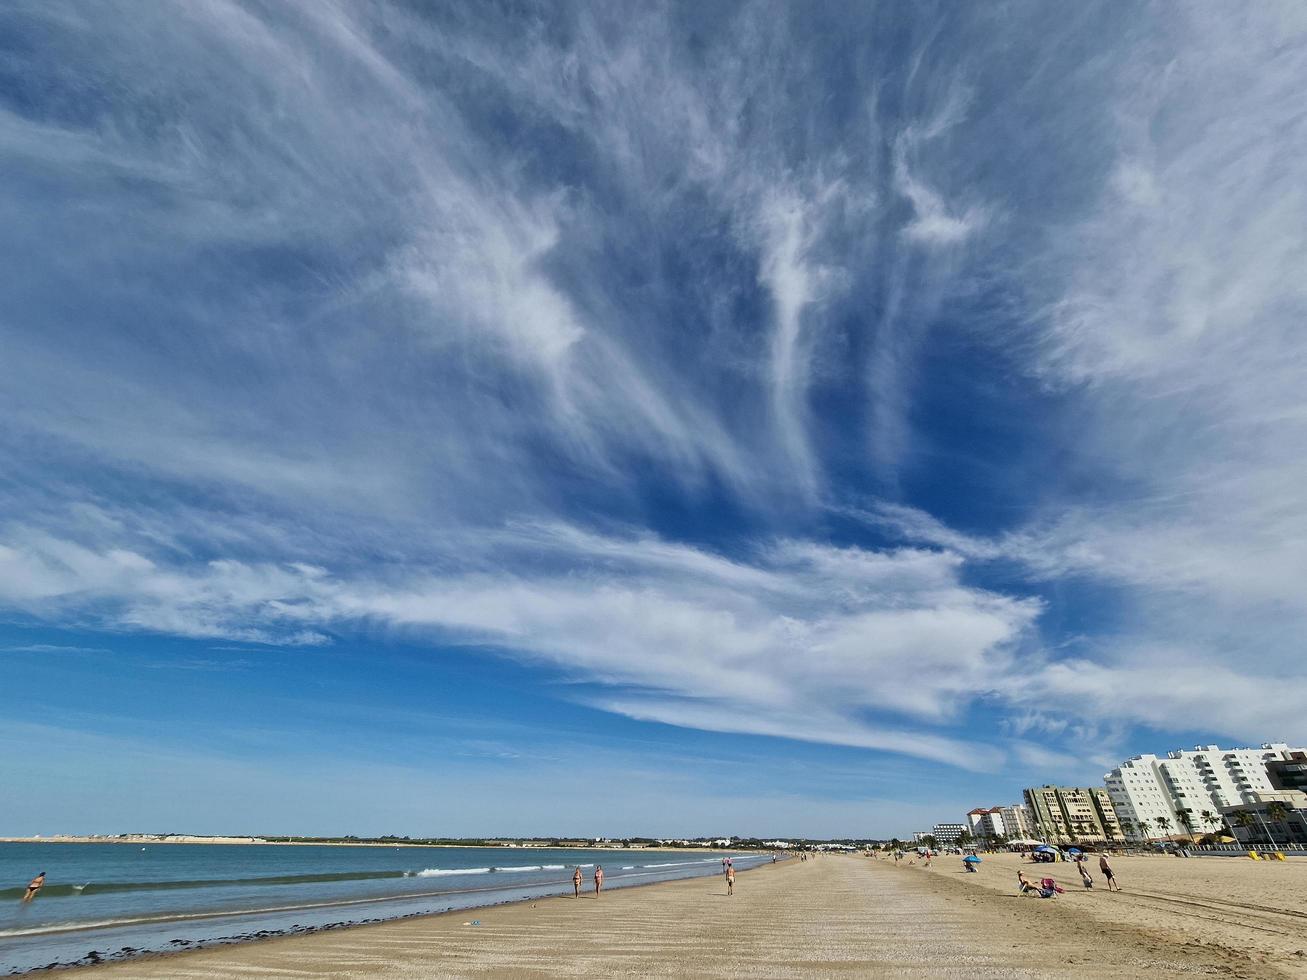 EL puerto de Santa maria, Cadice, Spagna - settembre 7°, 2022. valdelagrana spiaggia. foto